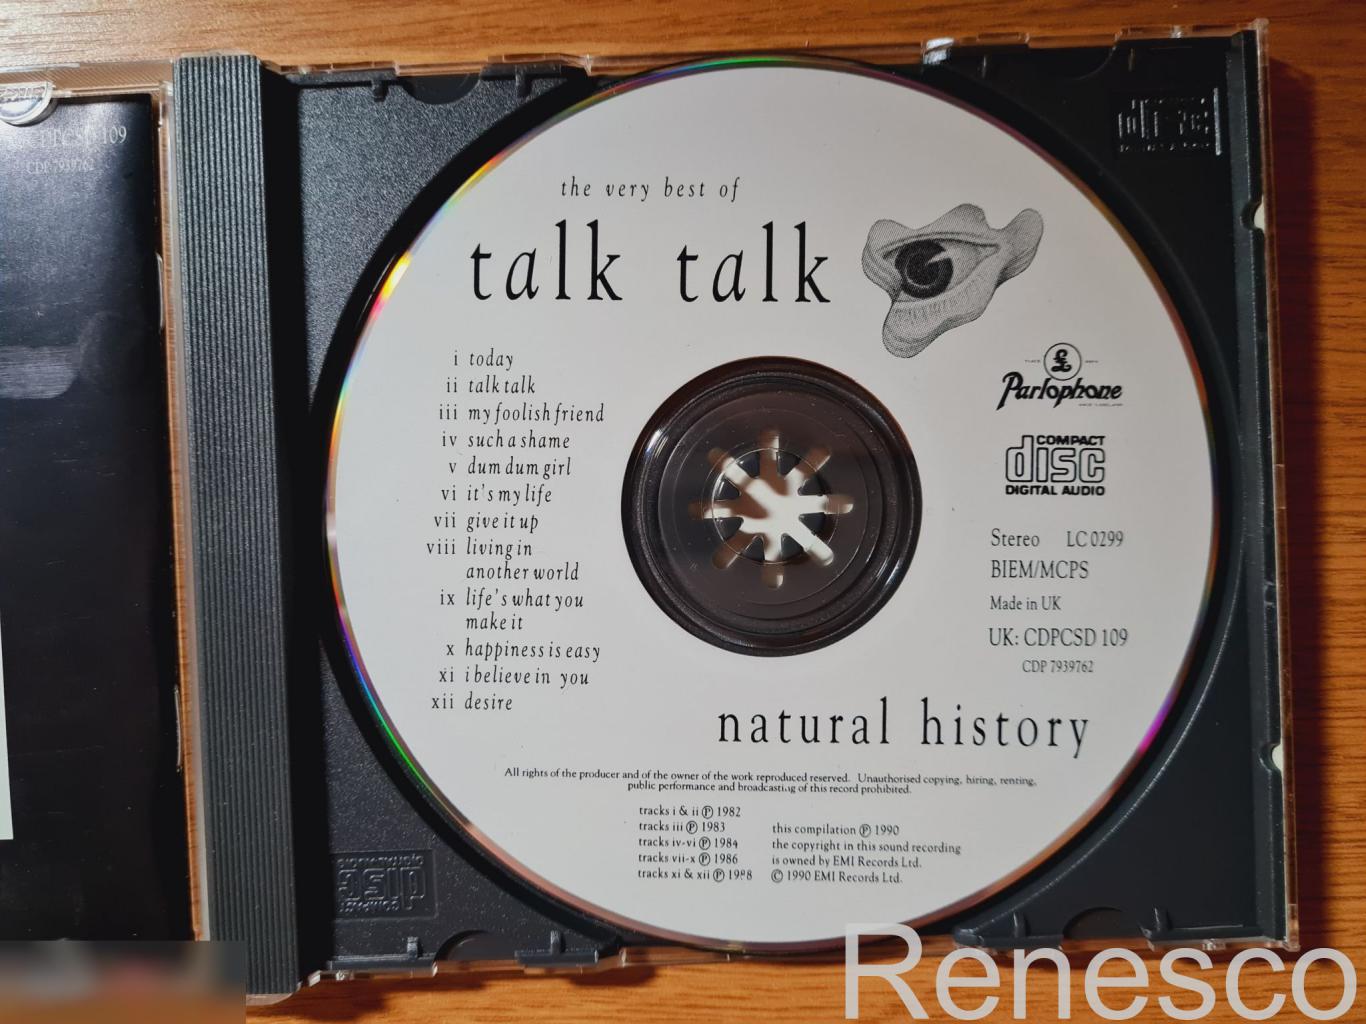 Talk Talk ?– Natural History (The Very Best Of Talk Talk) (UK) (1990) 4